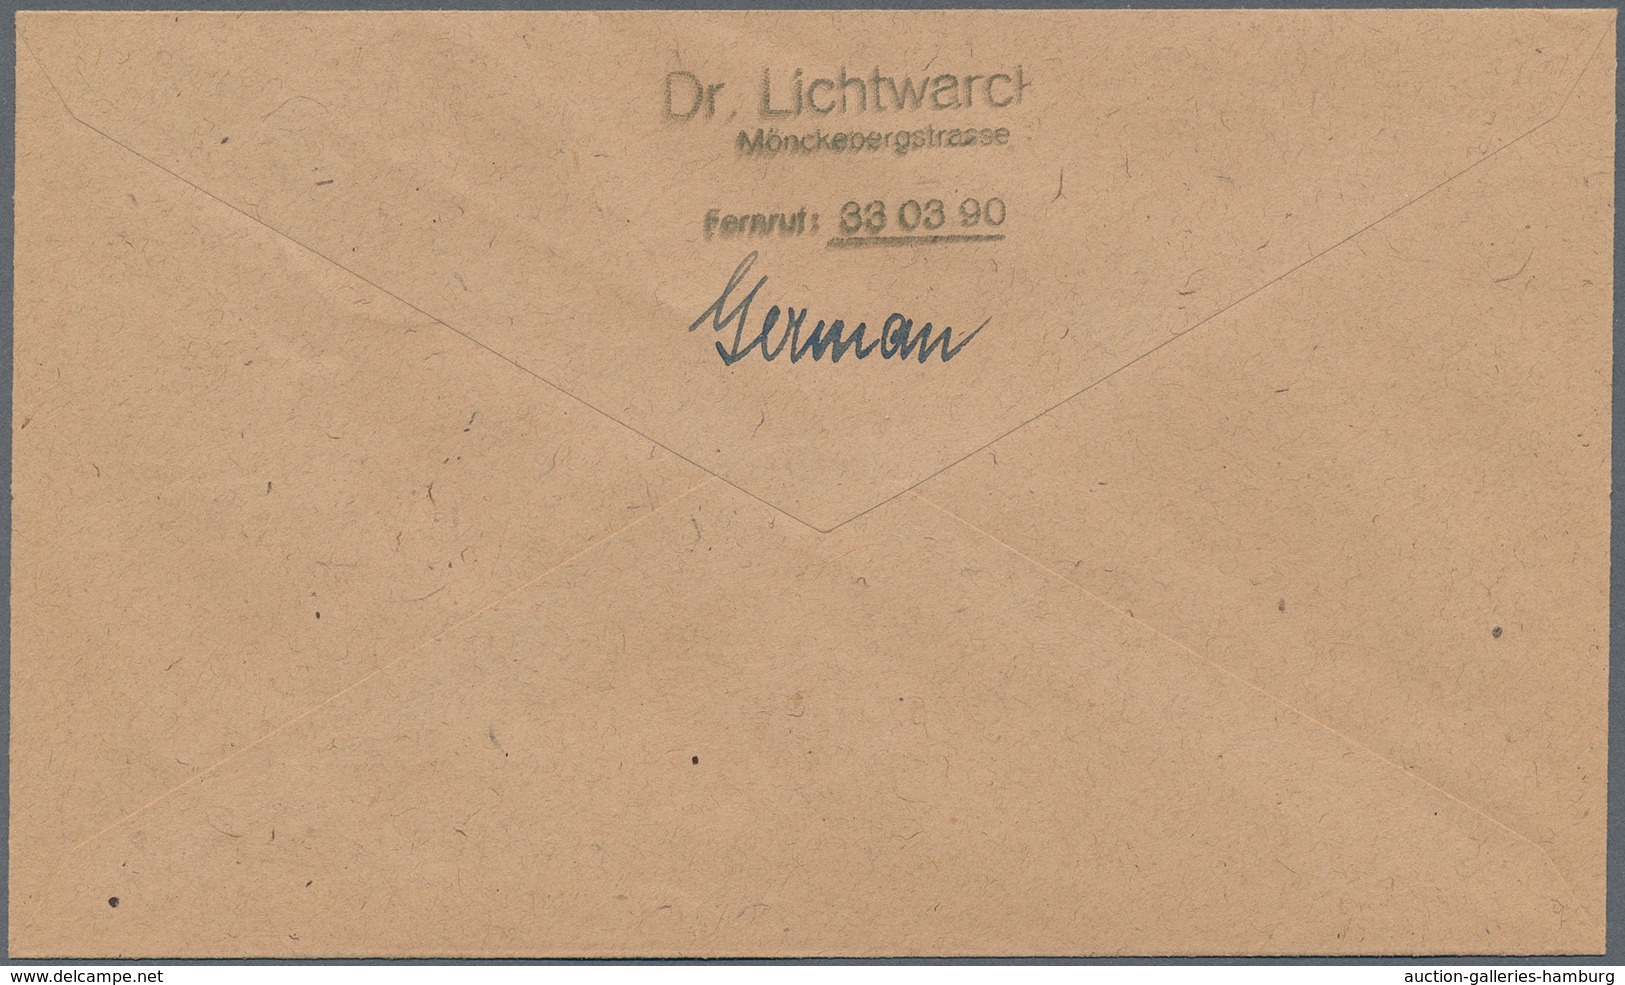 Bizone: 1945, 1 RM AM-Post vom Unterrand (Reihennummer 1 - 4) gestempelt "HAMBURG" je auf 4 adressie